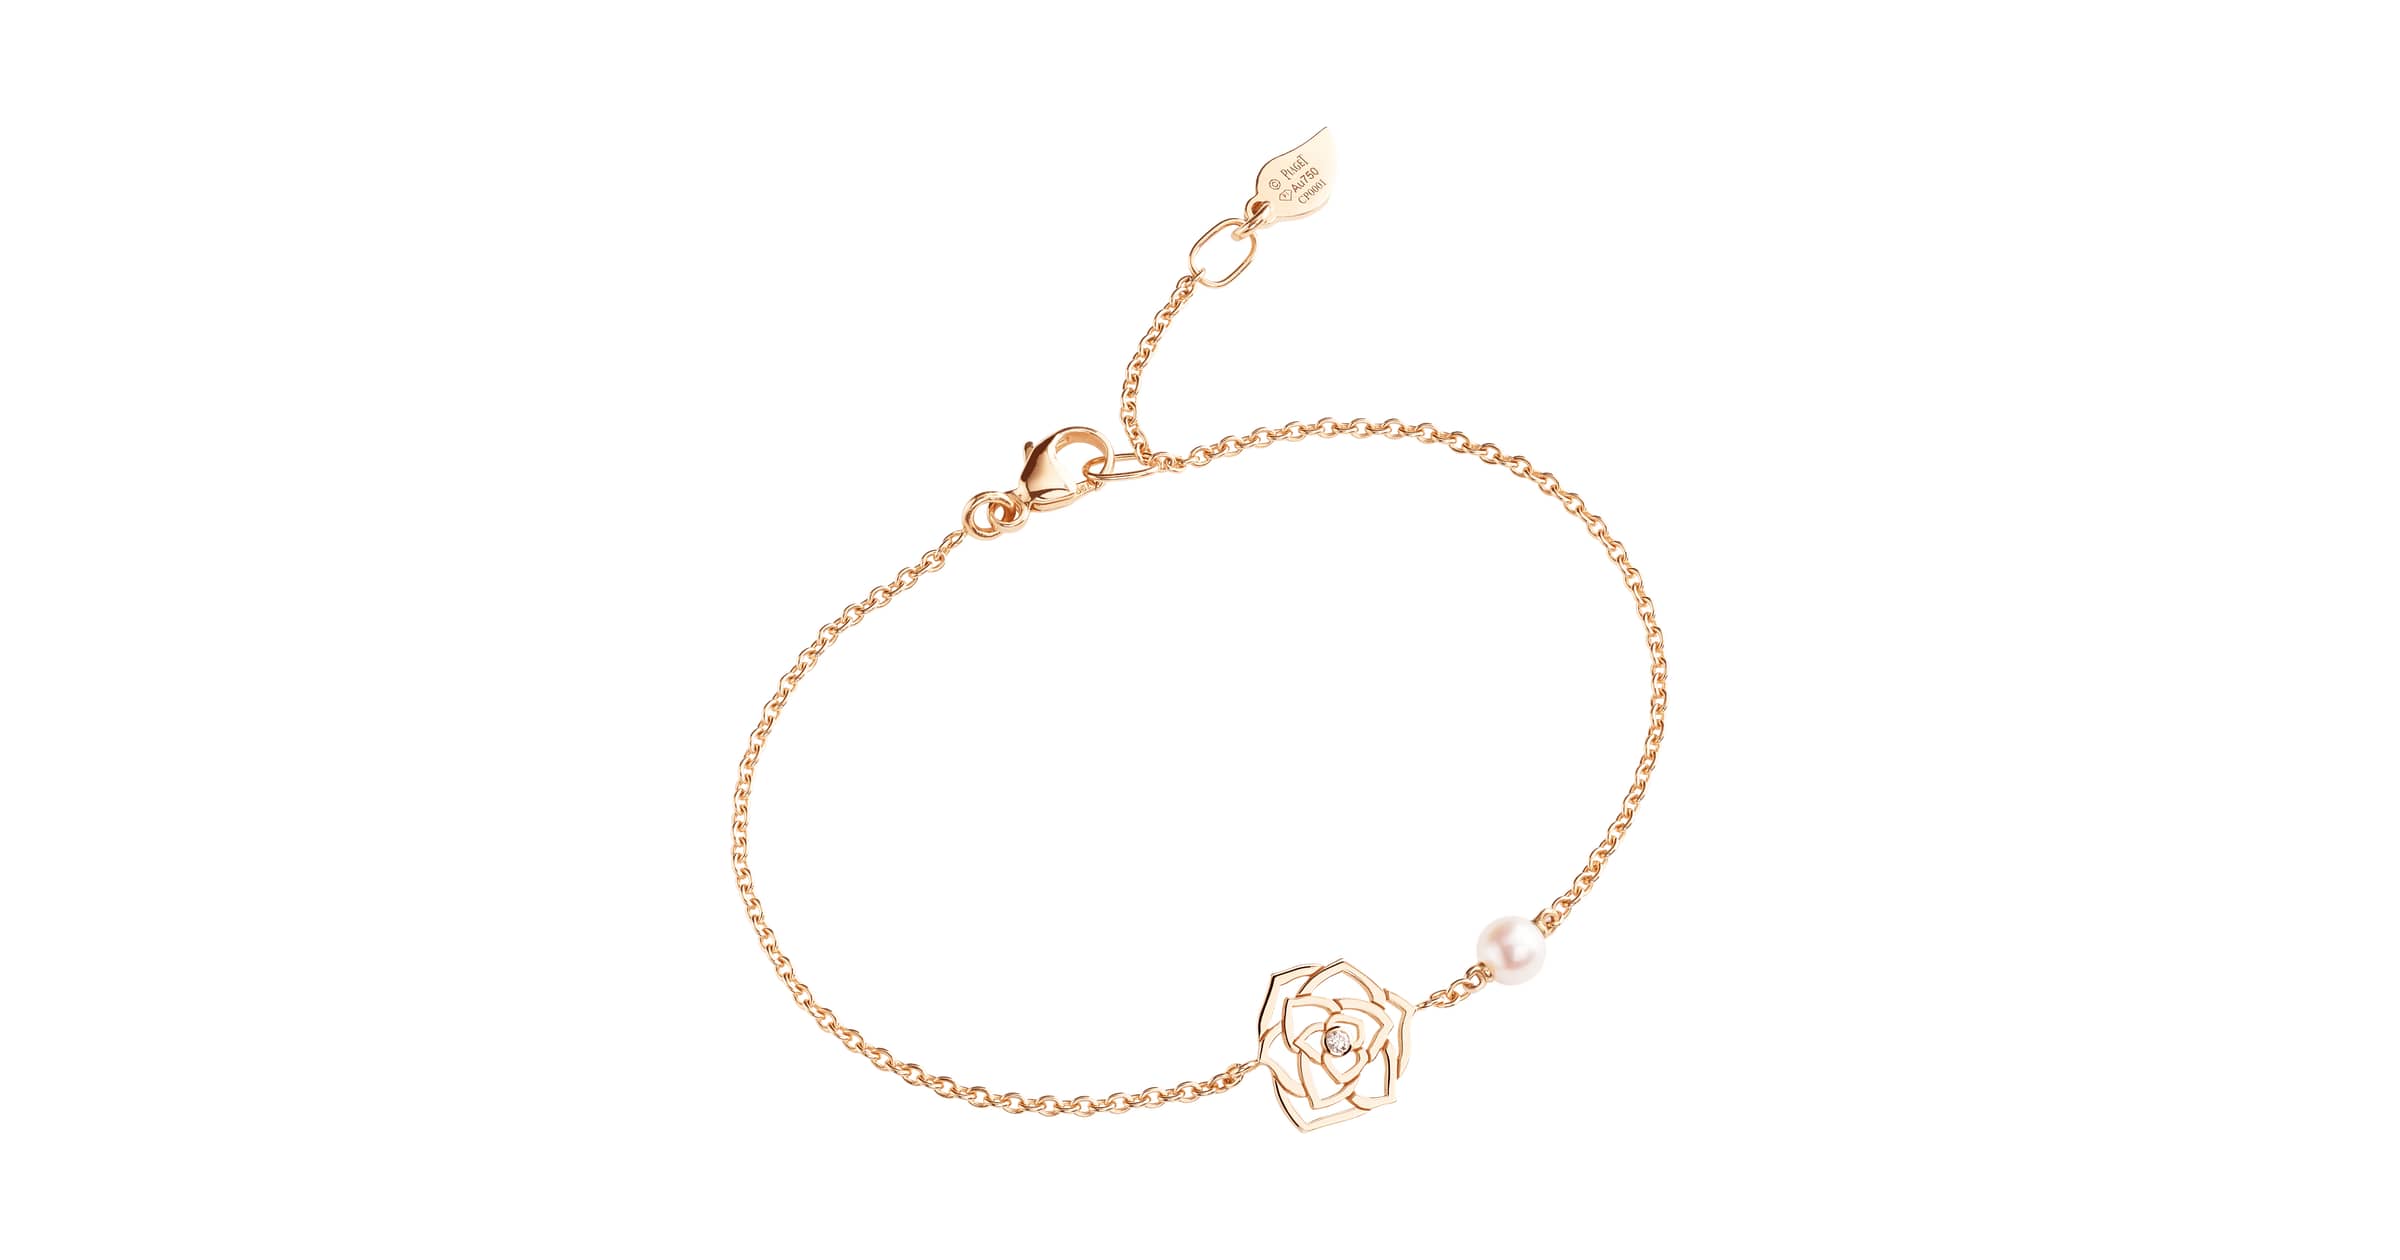 Rose gold Malachite Diamond open bangle bracelet  Piaget Luxury Jewellery  G36PD400  Gold jewelry fashion Fine gold jewelry Luxury jewelry